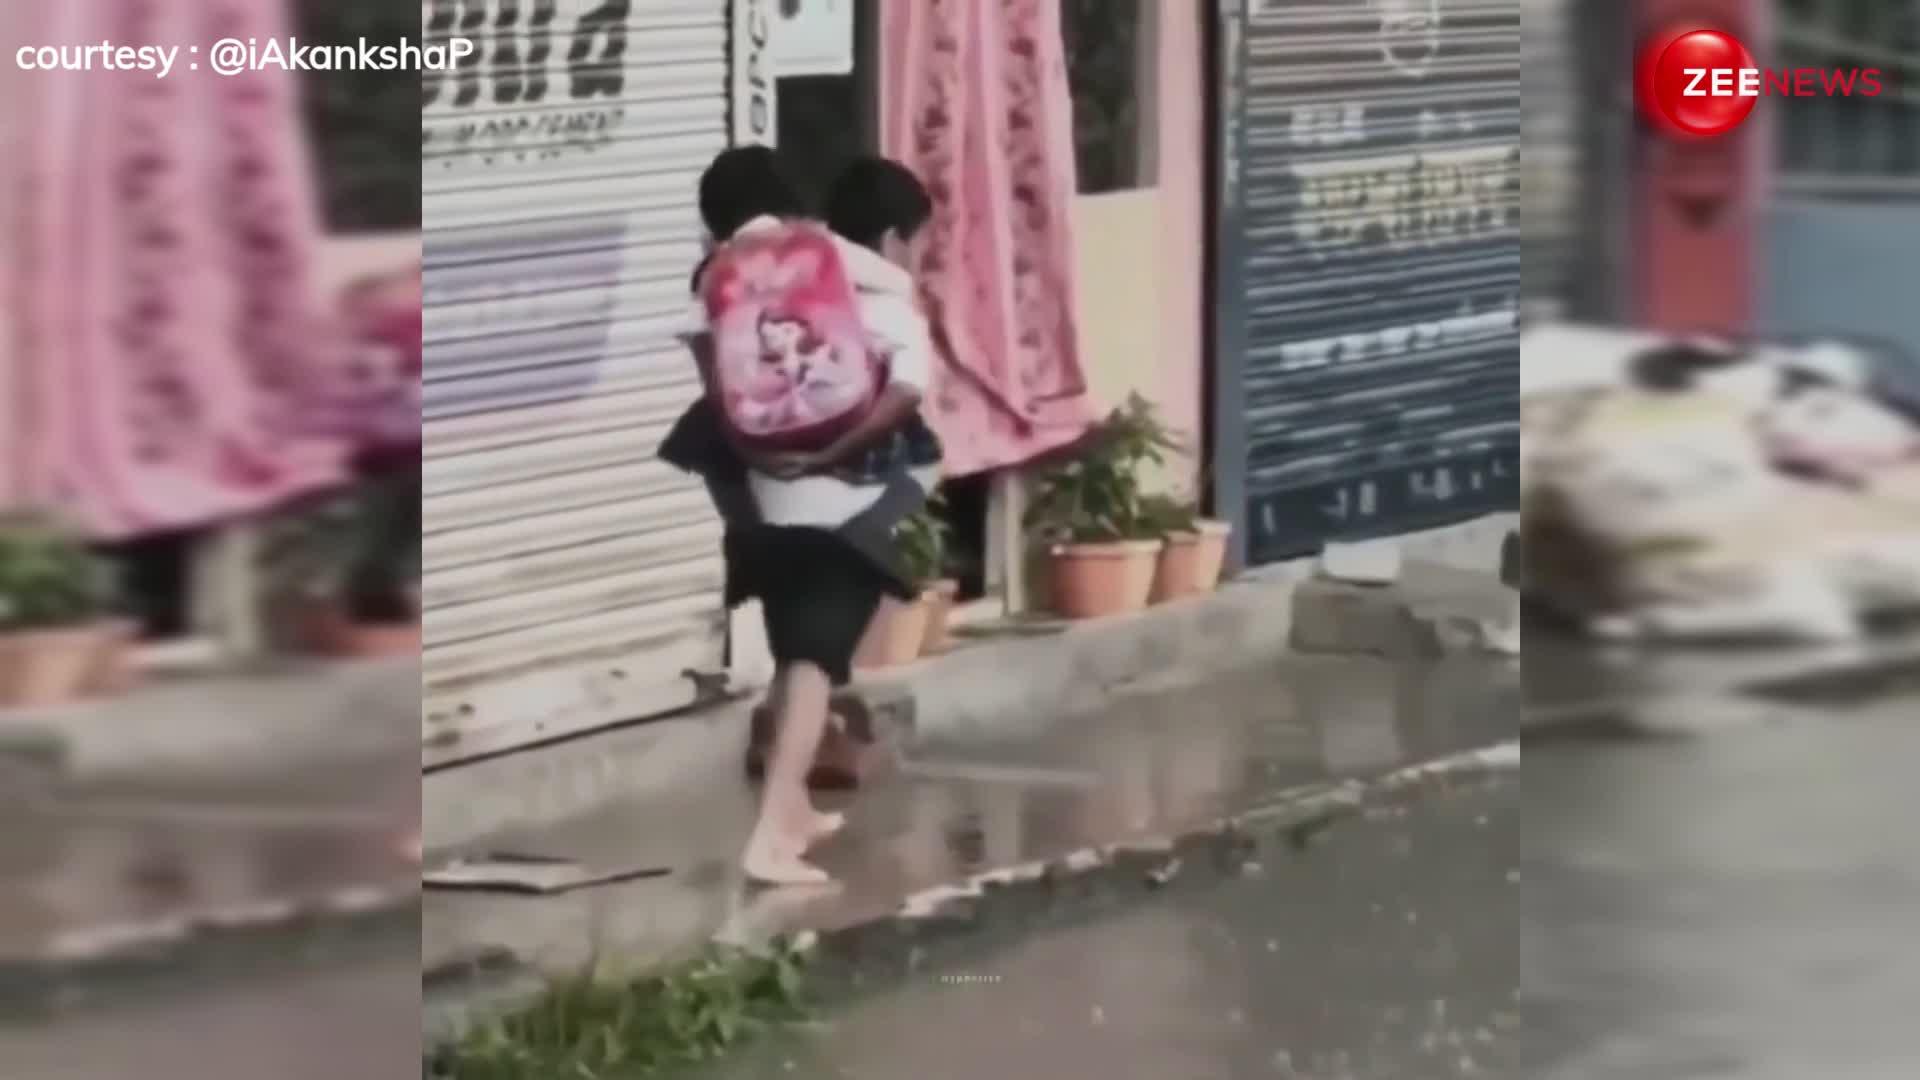 भाई का प्यार! छोटी बहन के नए जूते ना भीगे तो पीठ पर लेकर चल पड़ा, इंटरनेट पर वायरल हो रहा है दिल को छू लेने वाली क्यूट video